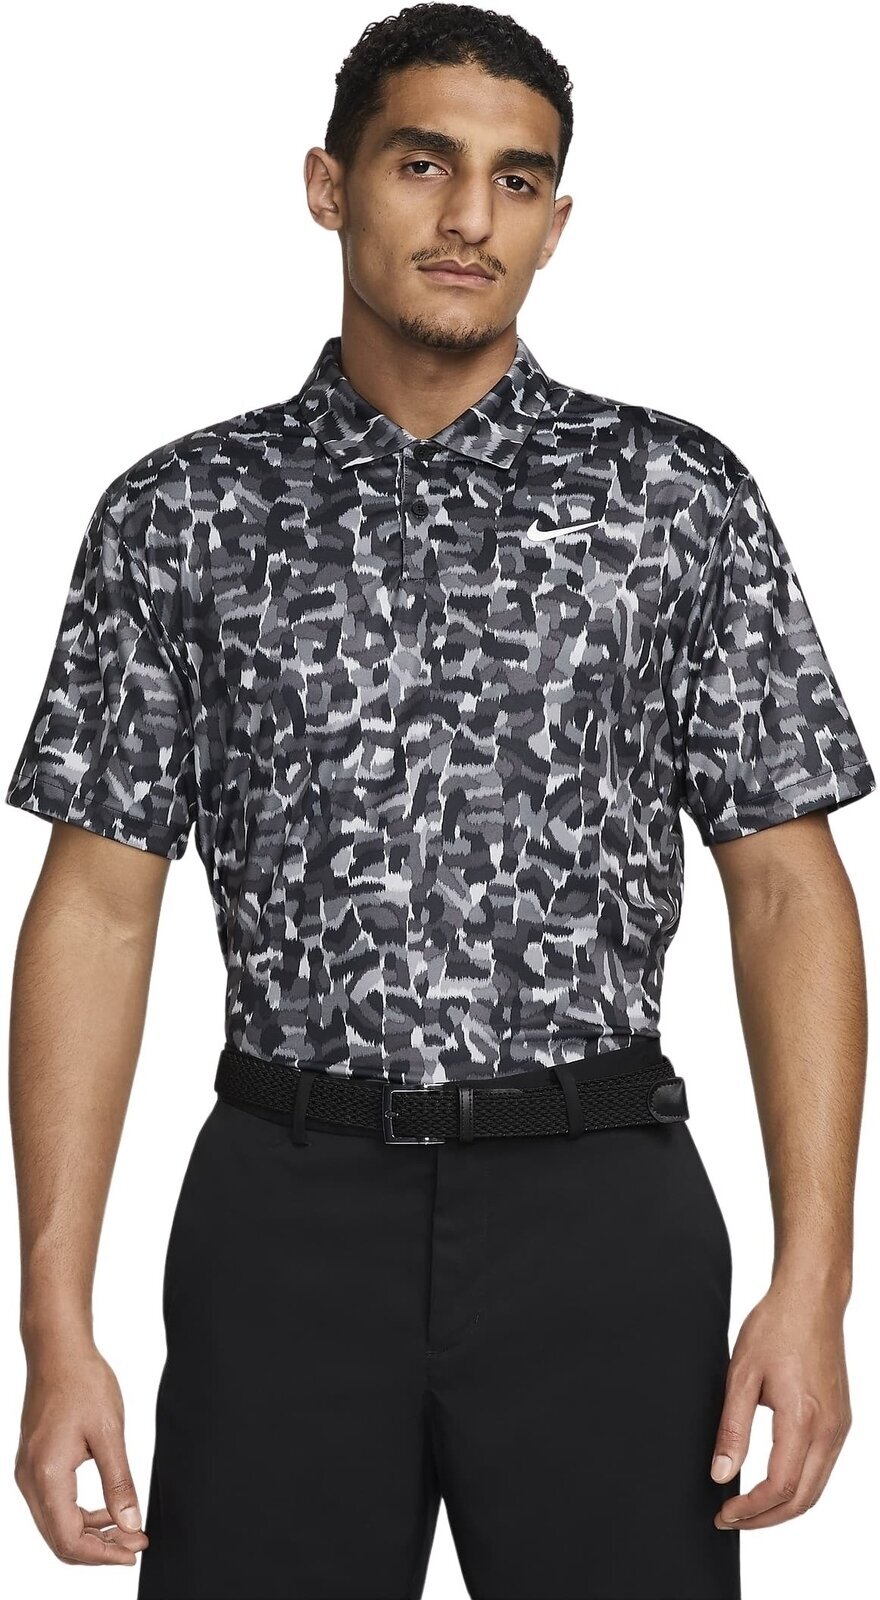 Polo košile Nike Dri-Fit Tour Confetti Print Mens Polo Light Smoke Grey/White L